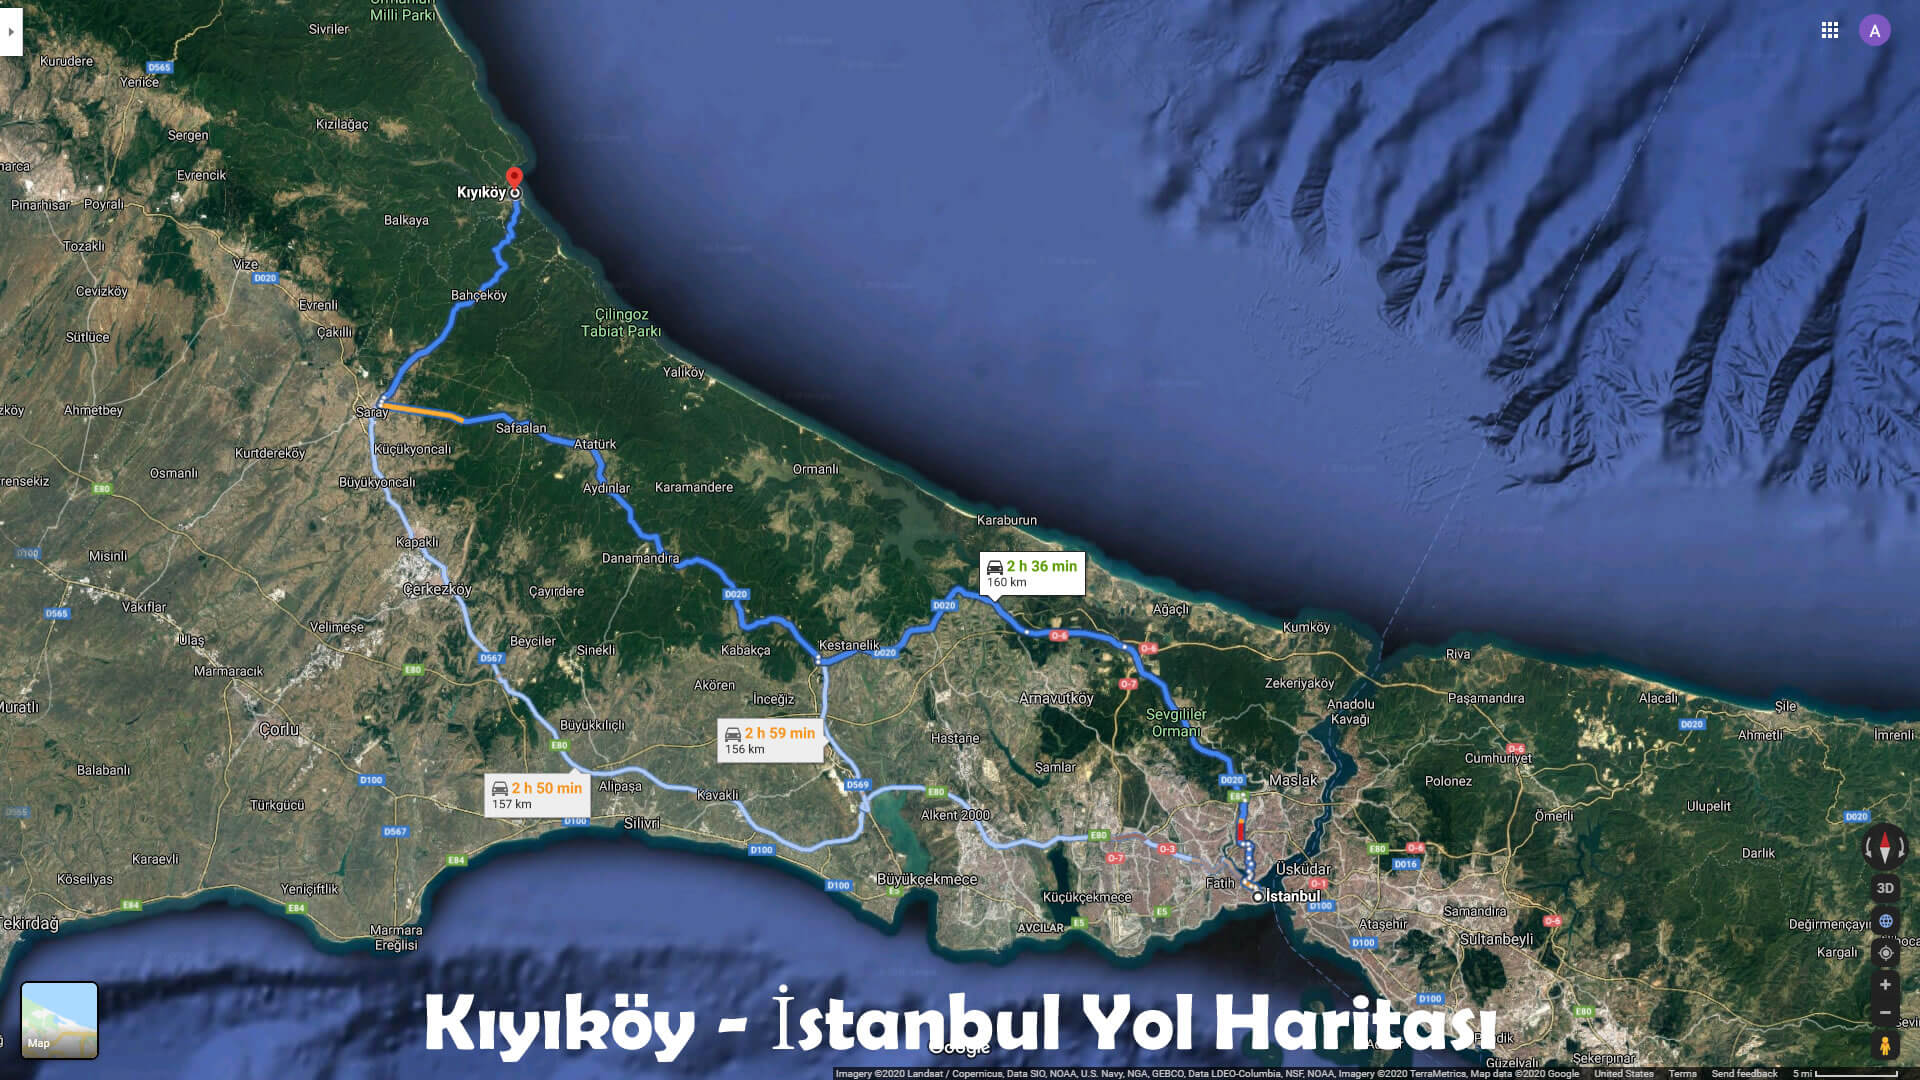 Kıyıköy - İstanbul Yol Haritası